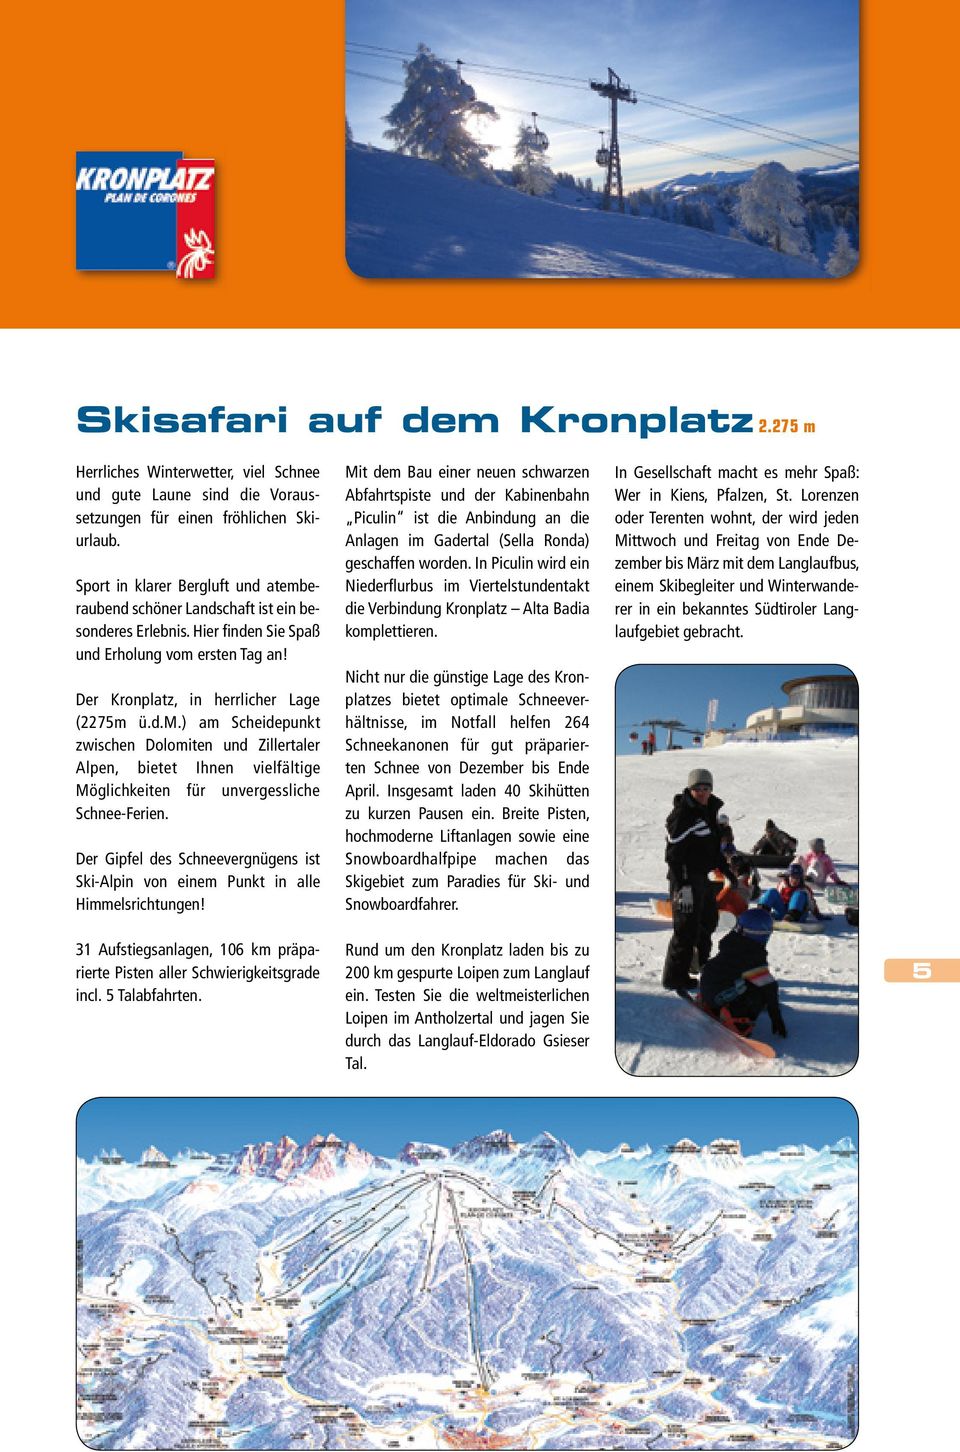 Der Gipfel des Schneevergnügens ist Ski-Alpin von einem Punkt in alle Himmelsrichtungen!